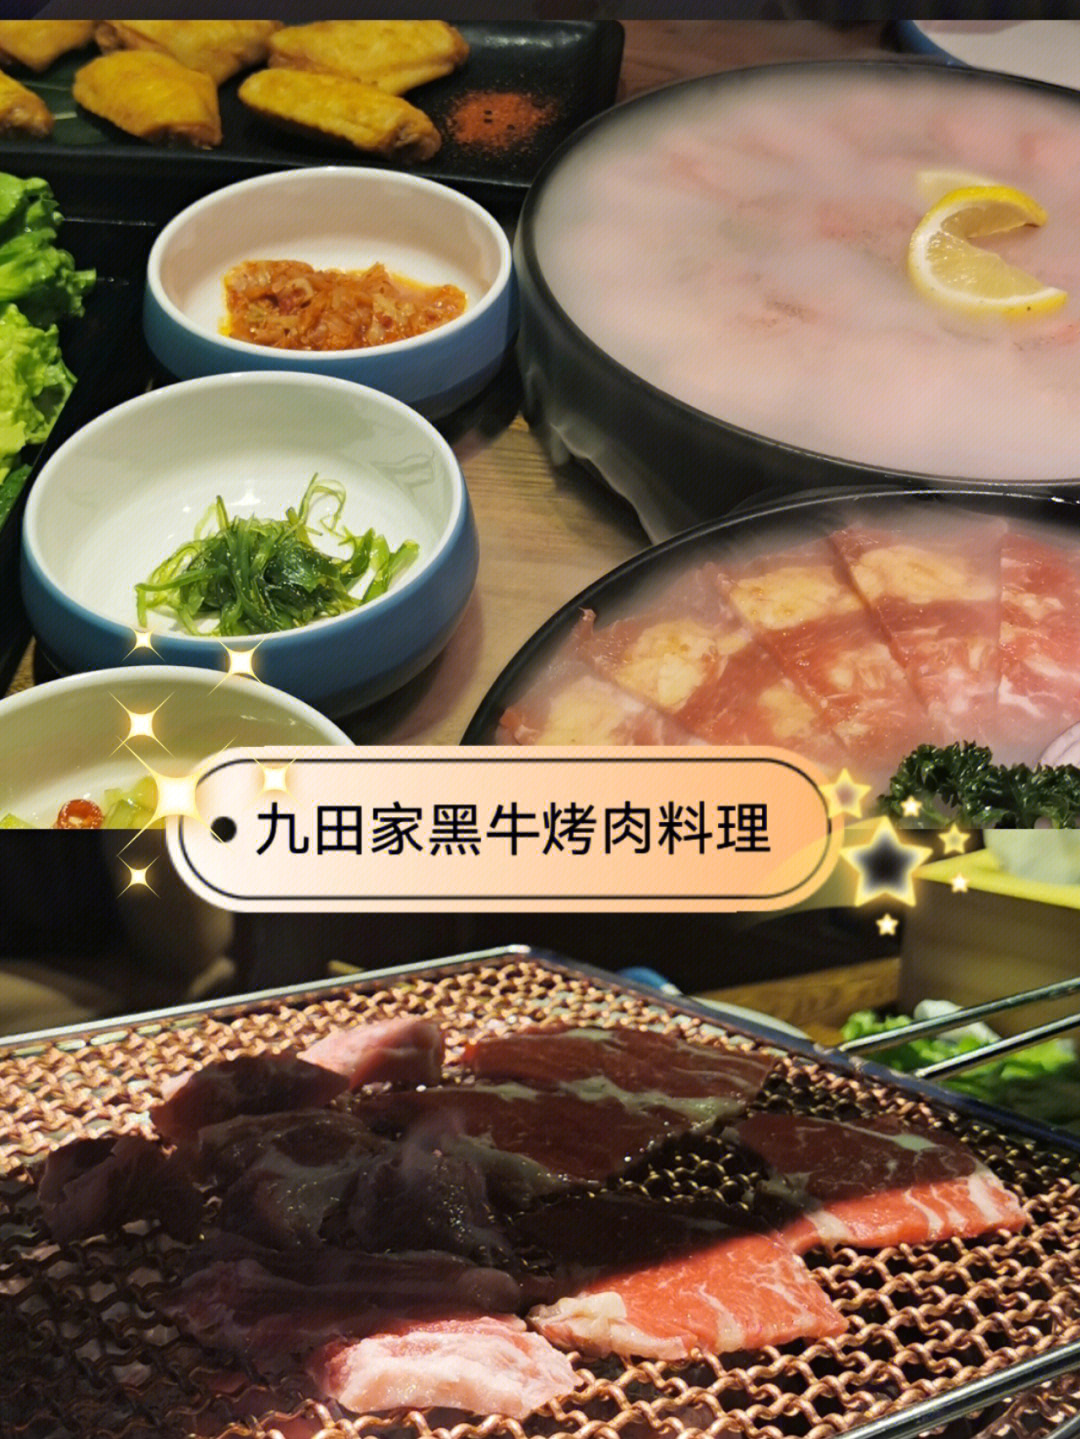 太原九田家烤肉图片